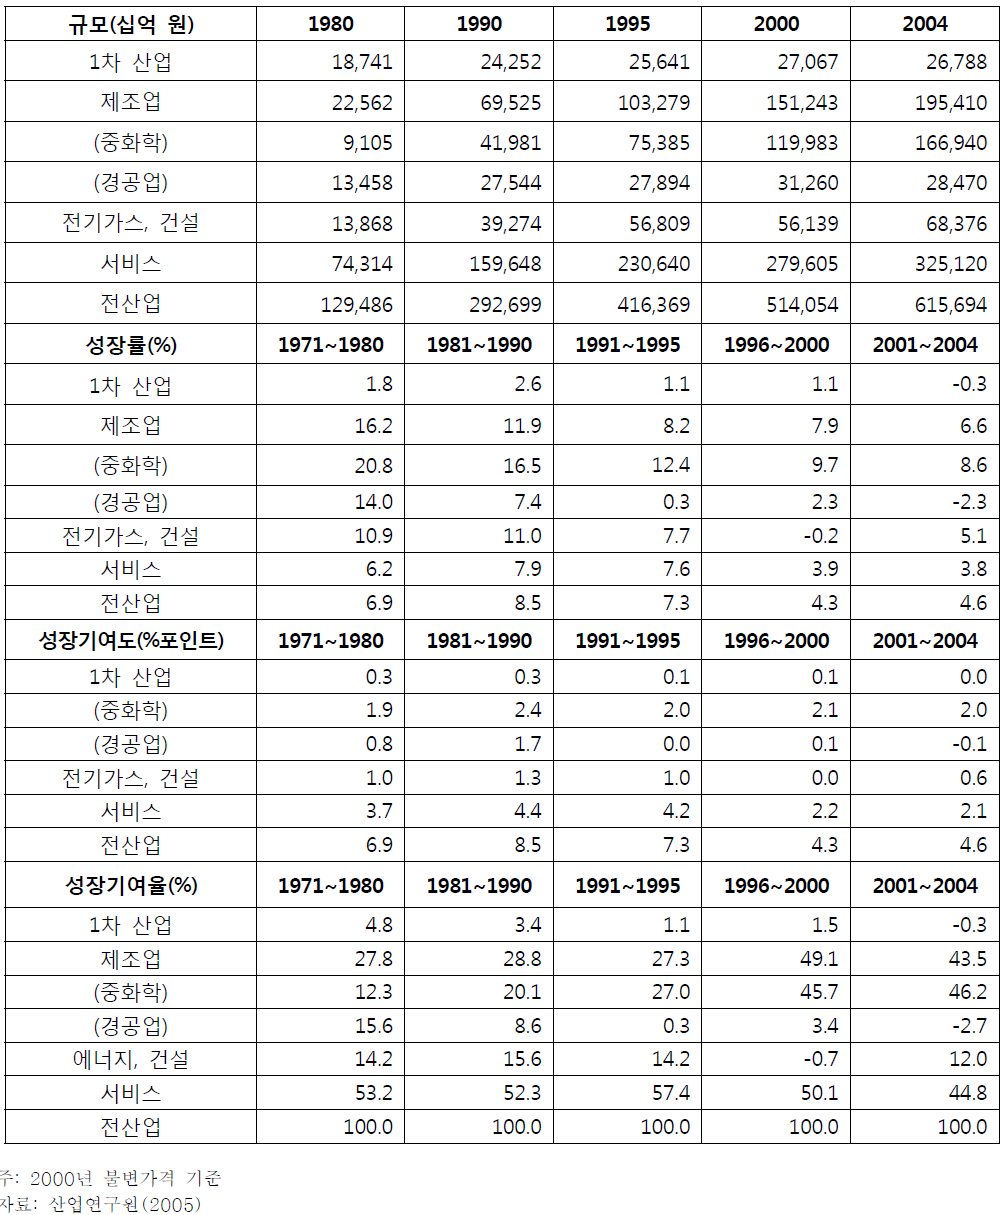 한국 산업의 성장 추이